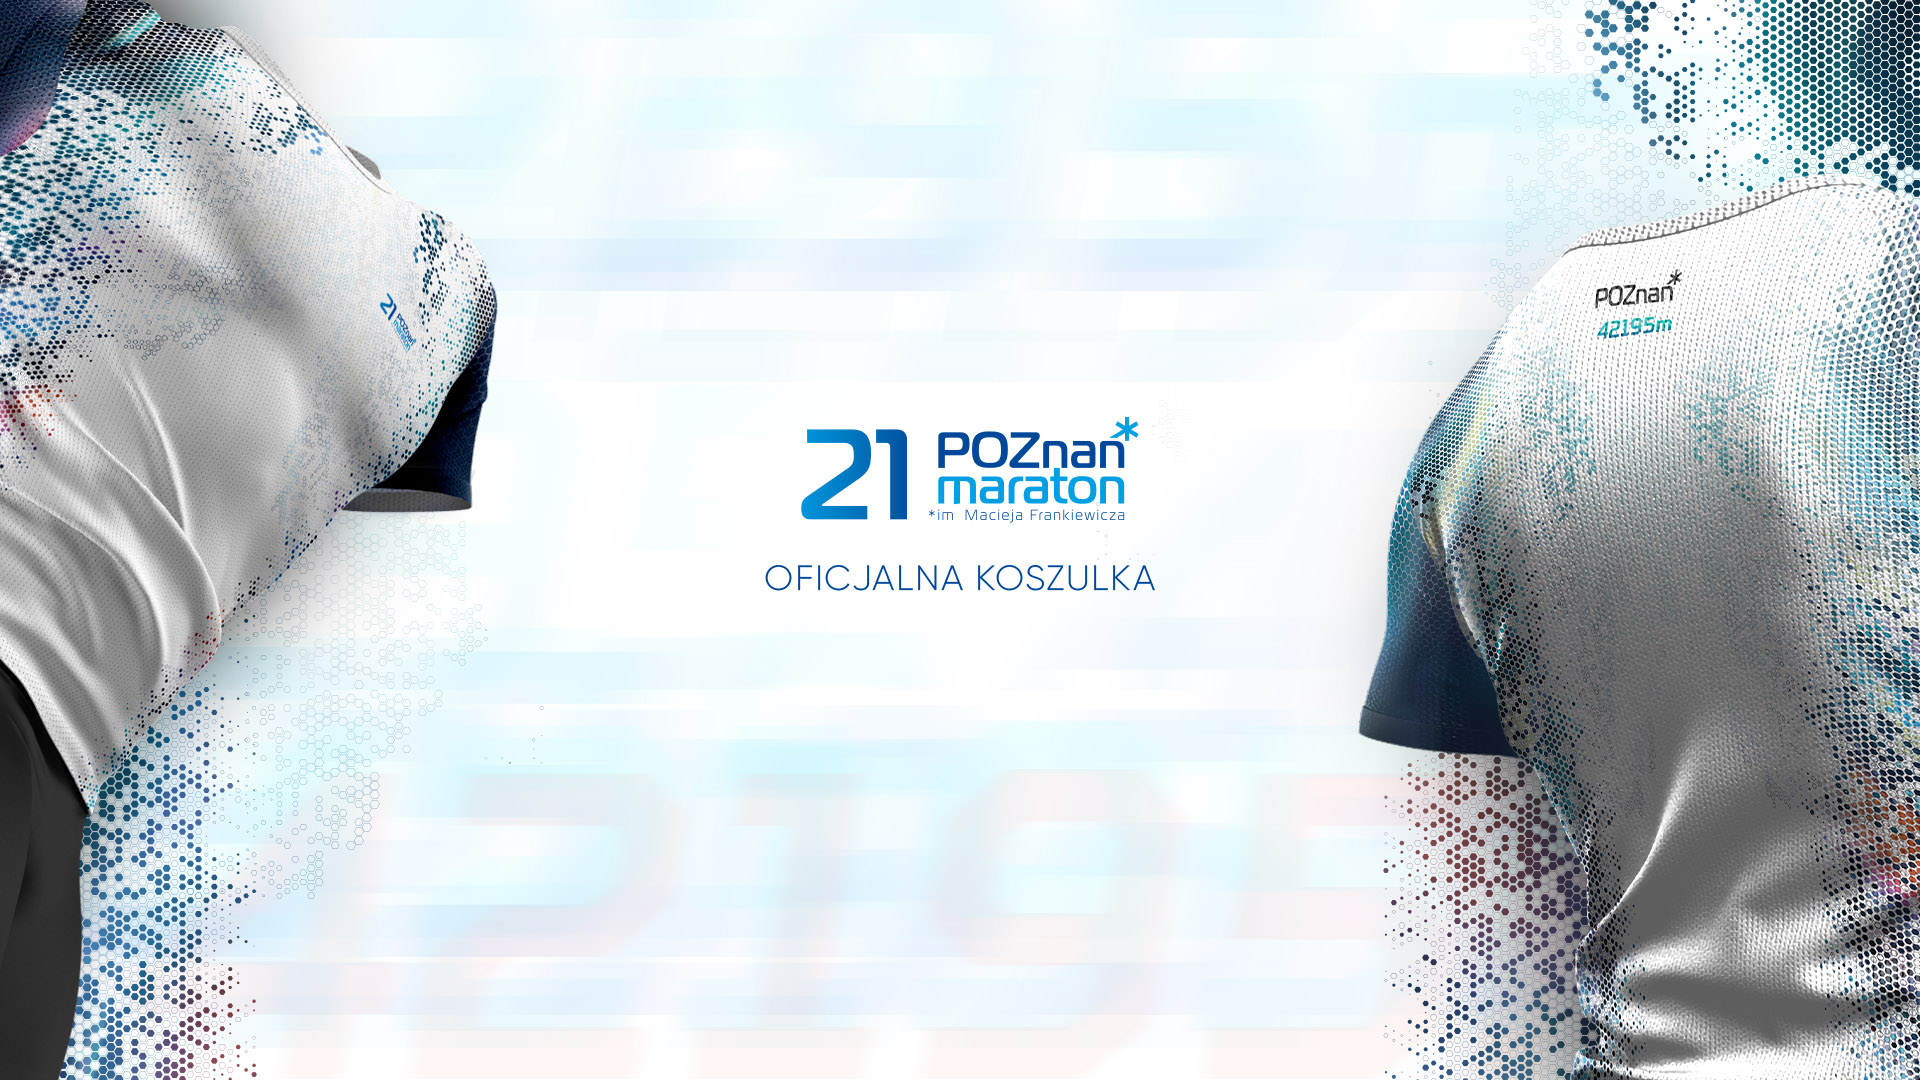 Oficjalna koszulka 21 Poznań Maraton